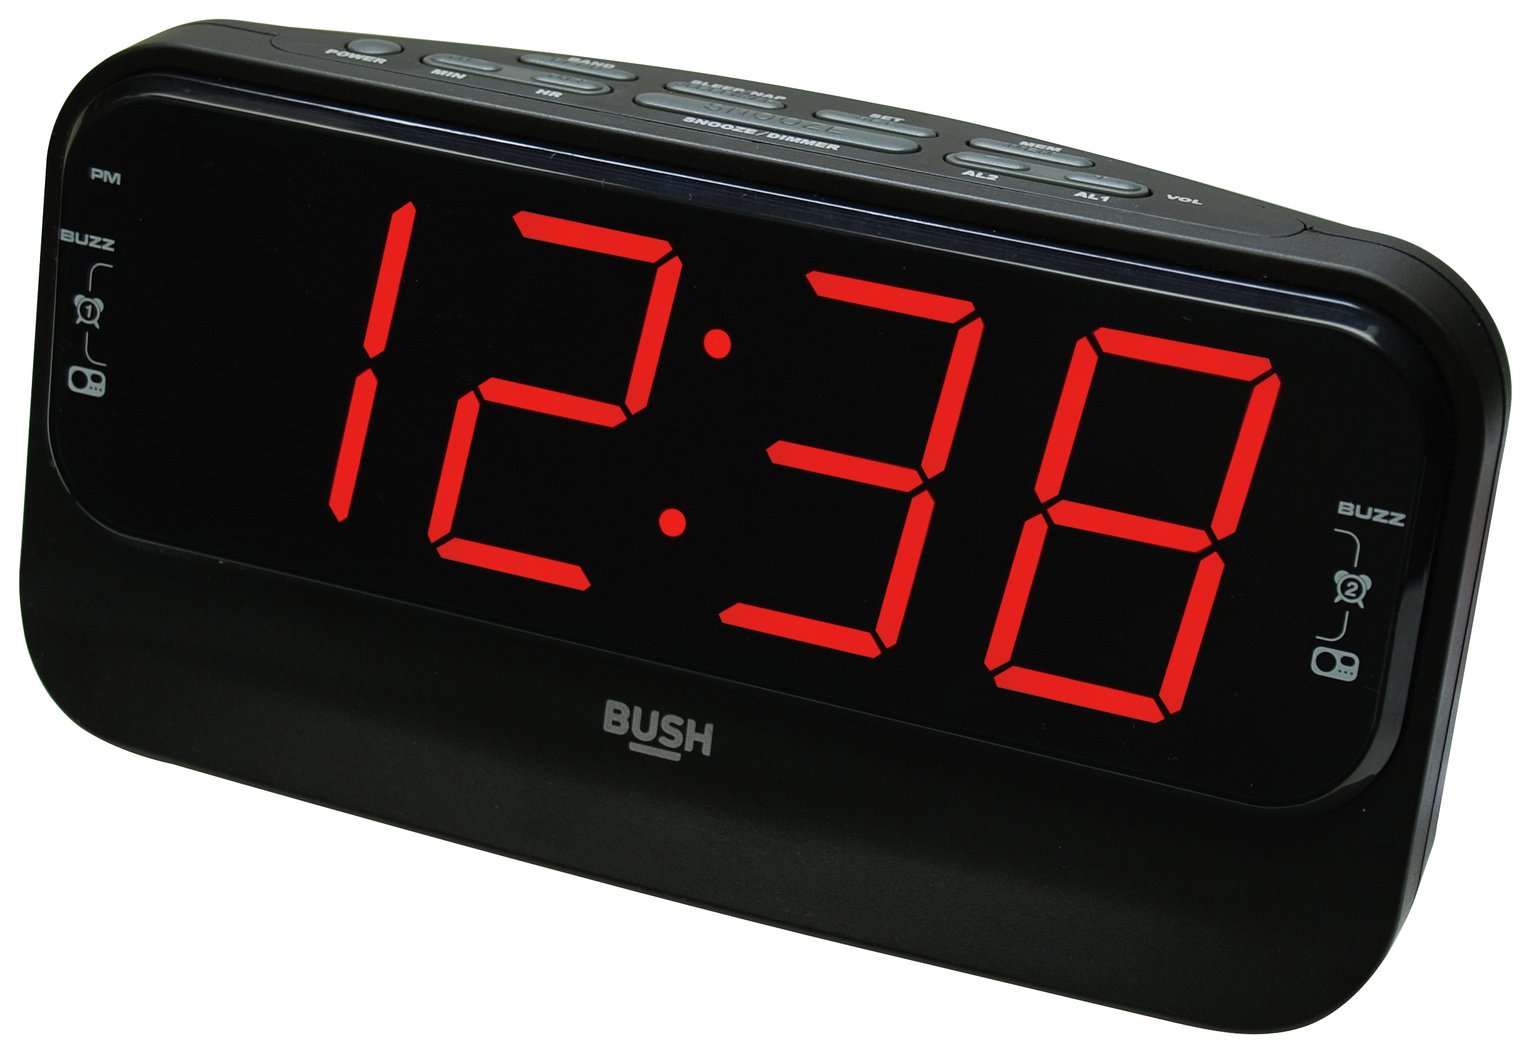 Bush Big LED Alarm Clock Radio Review